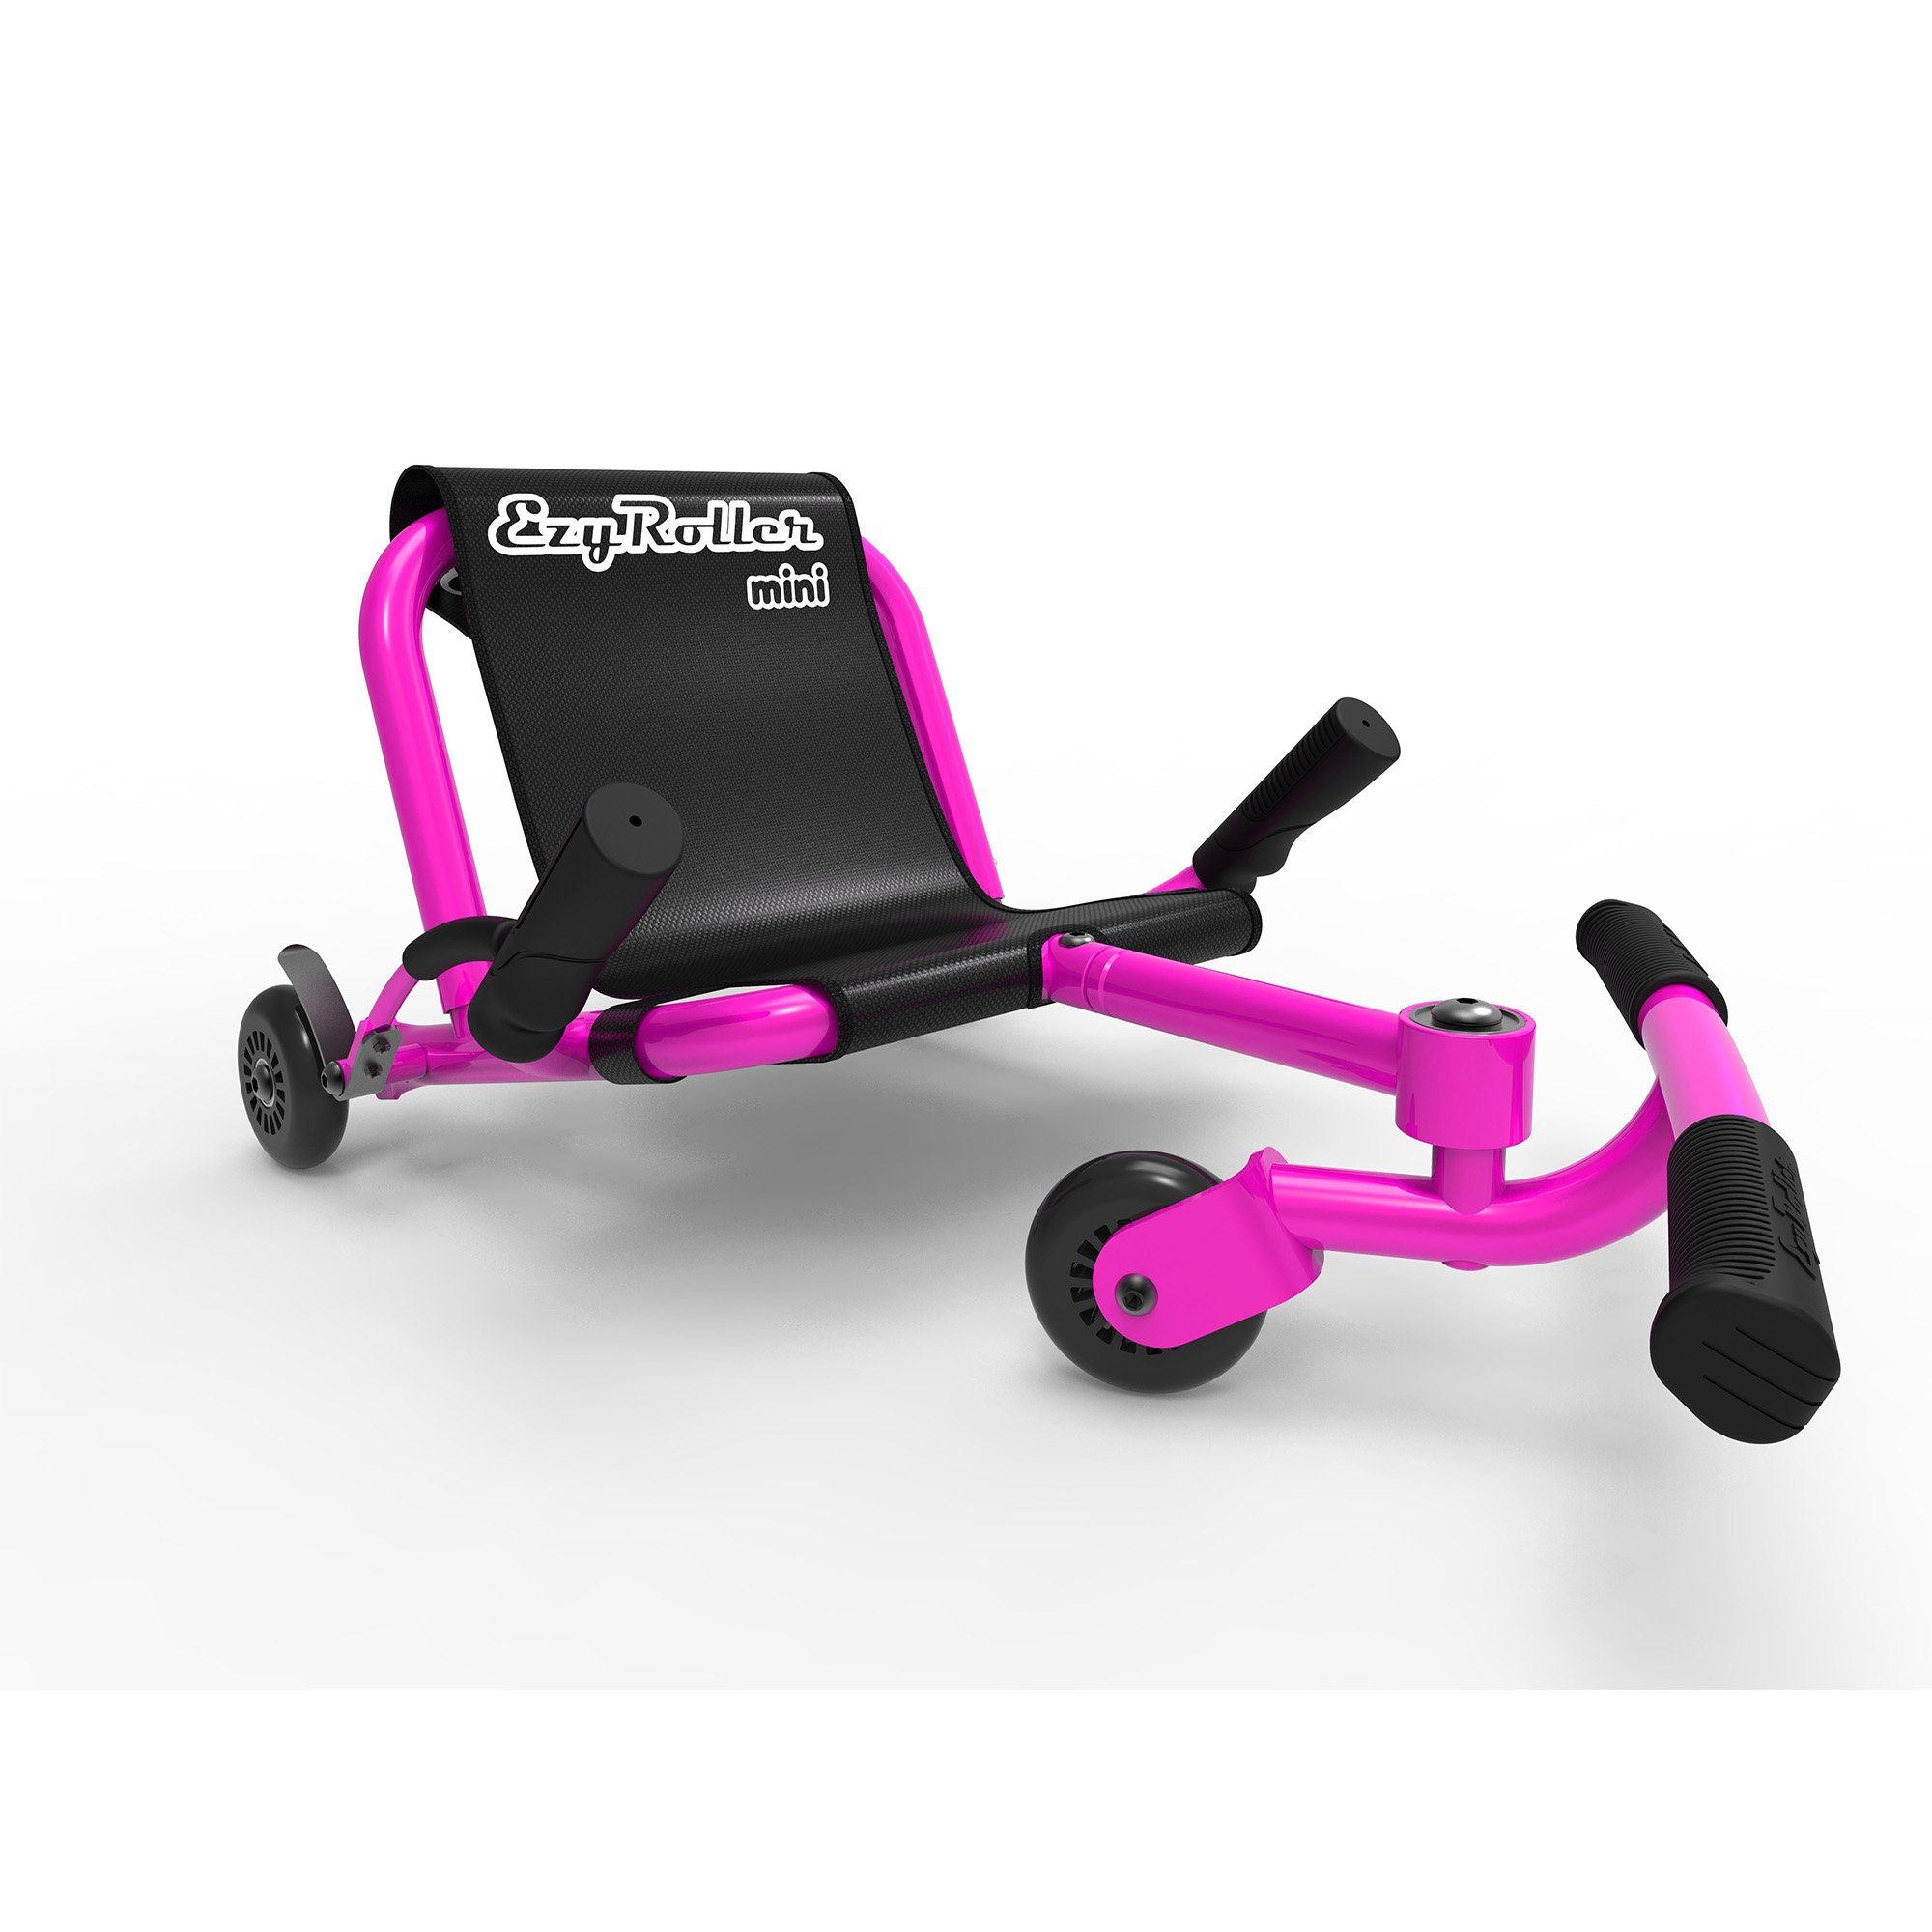 EzyRoller Dreiradscooter Jahre - 2 Bewegungsspielzeug Mini, Kleinkinder Kinderfahrzeug Dreirad pink für 4